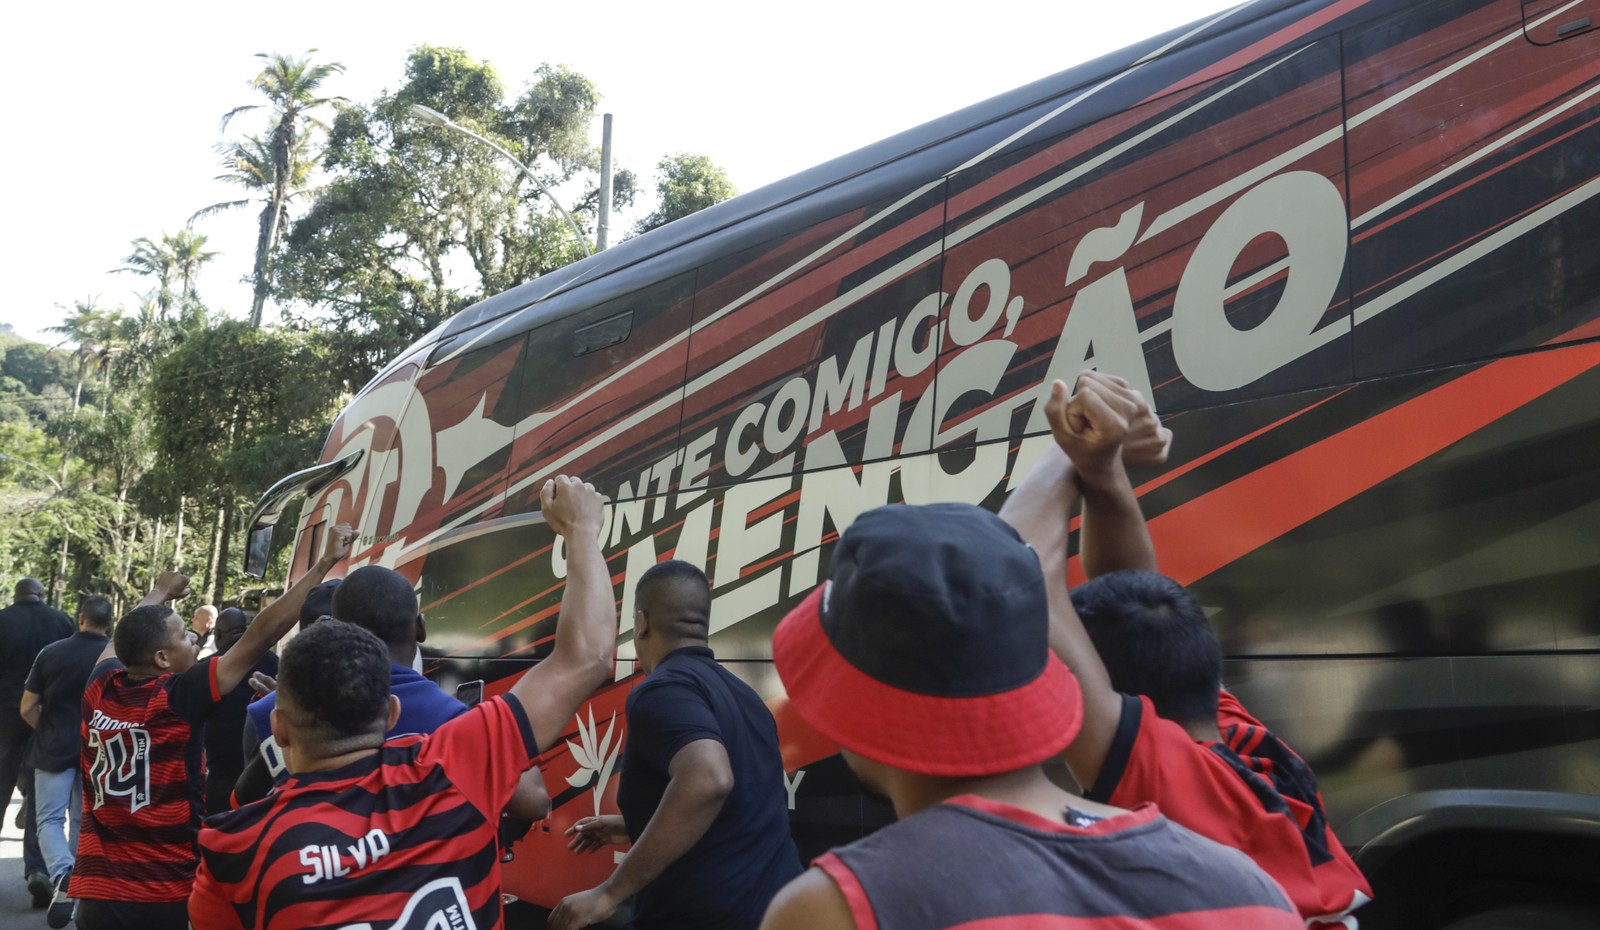 AeroFla: Flamengo deixa Ninho do Urubu, em destino ao aeroporto do Galeão, e torcida acompanha nas ruas — Foto: Gabriel de Paiva/O Globo